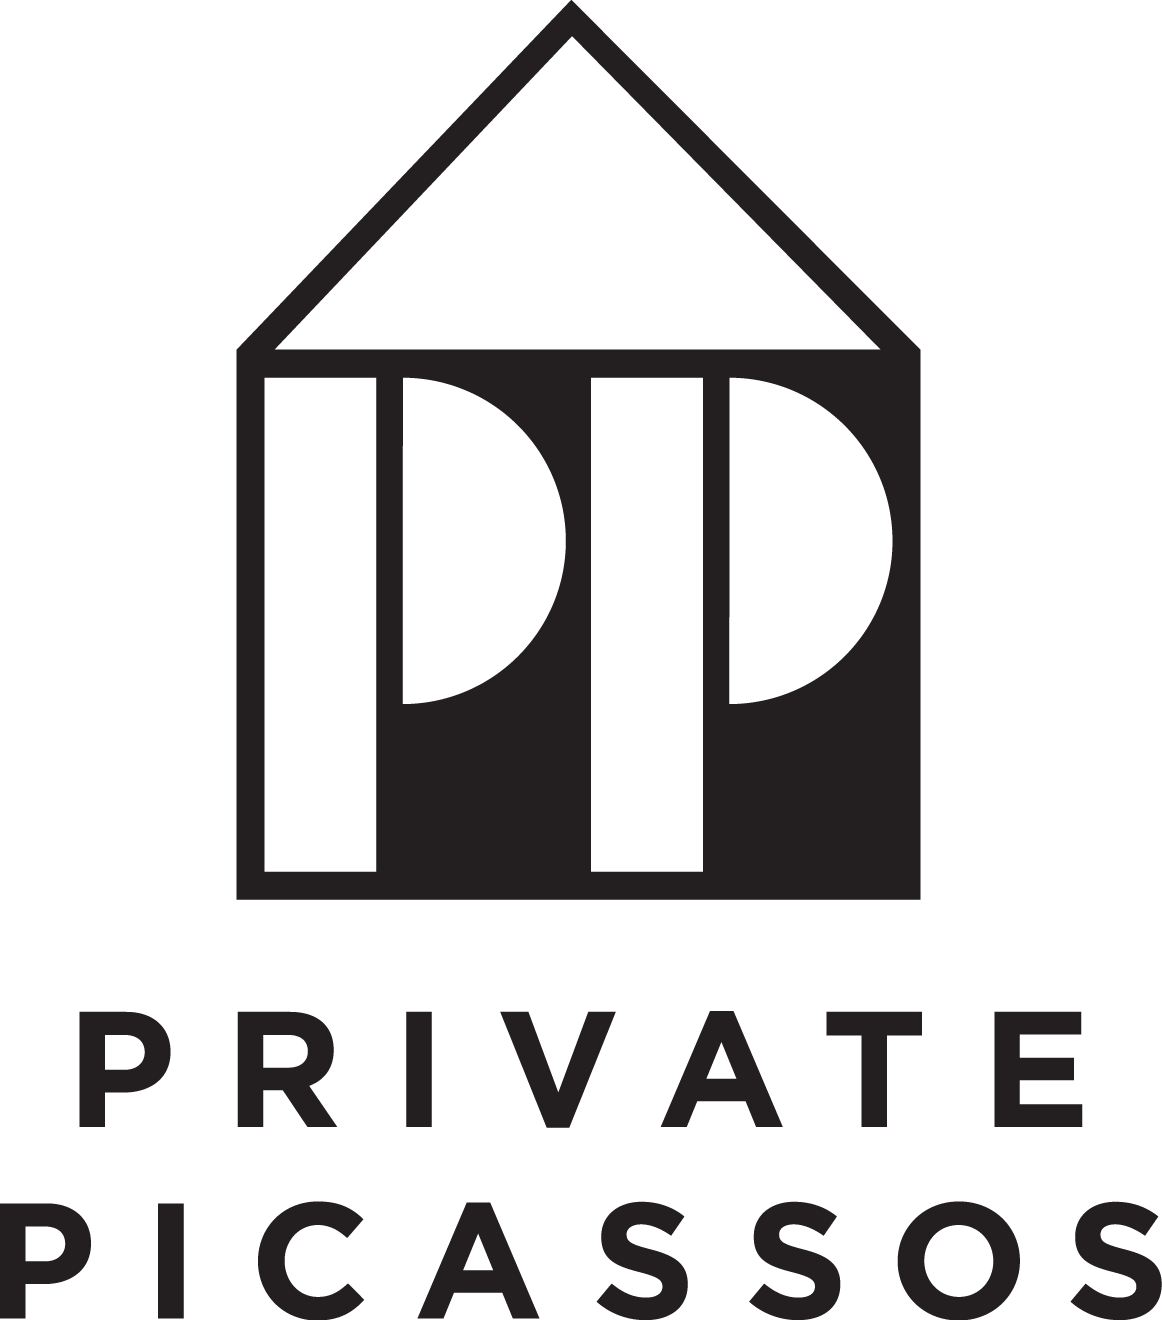 Private Picassos logo